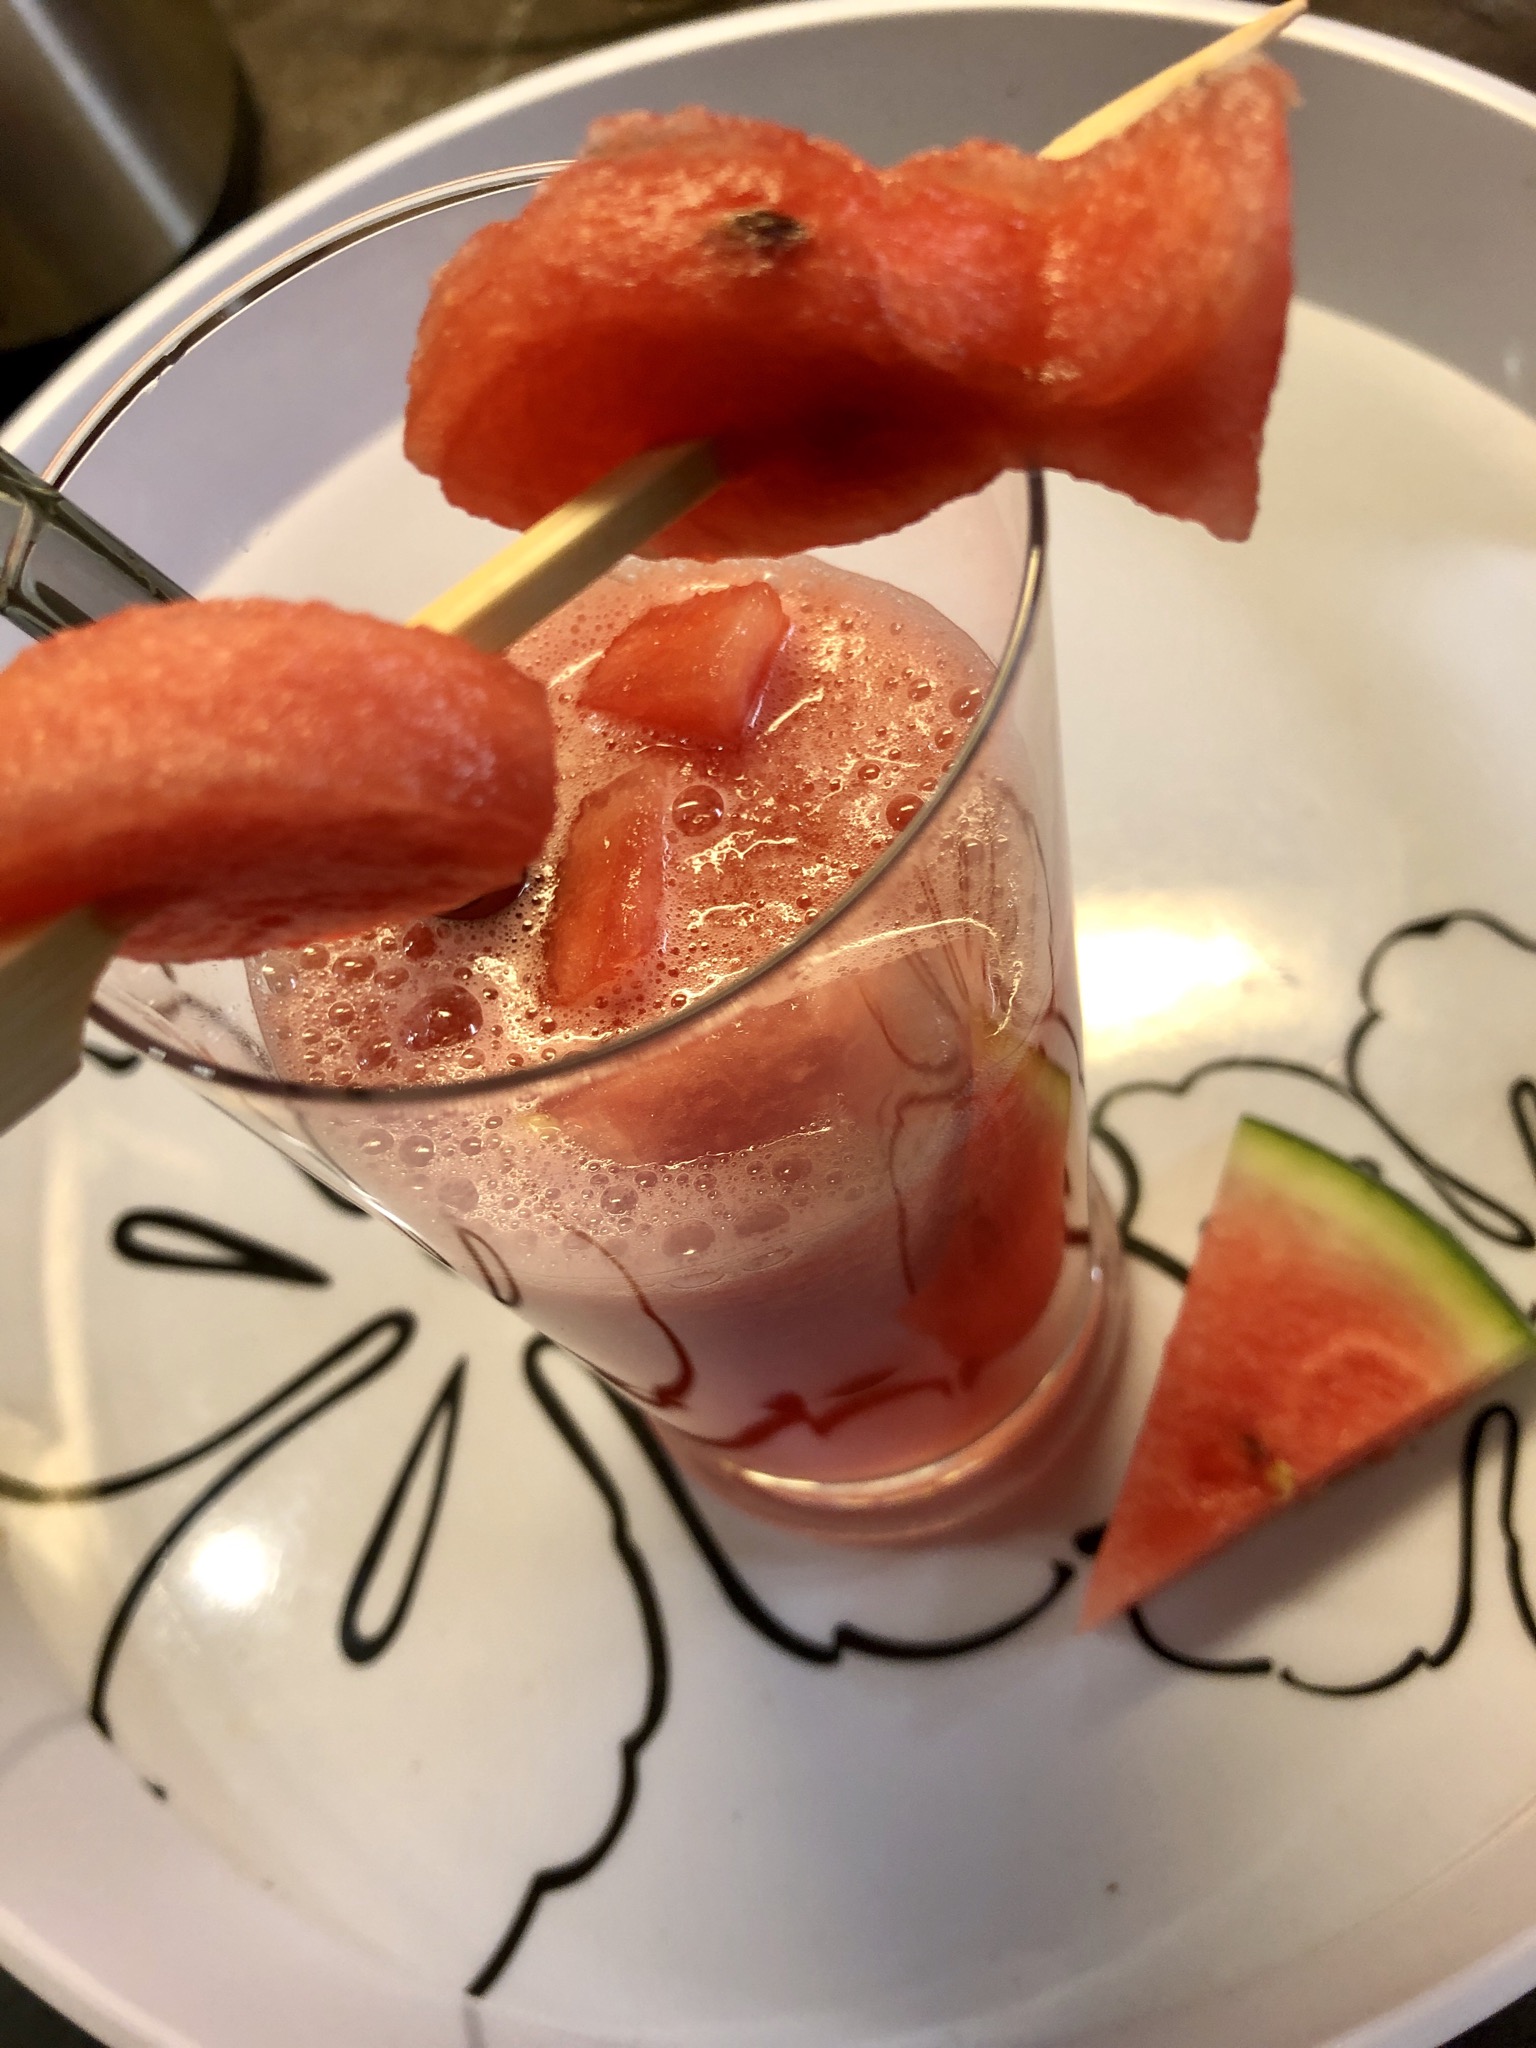 Bild zum Schritt 11 für das Bastel- und DIY-Abenteuer für Kinder: 'Die gefrorenen Melonen-Eiswürfel“ ins Getränk geben und servieren!'